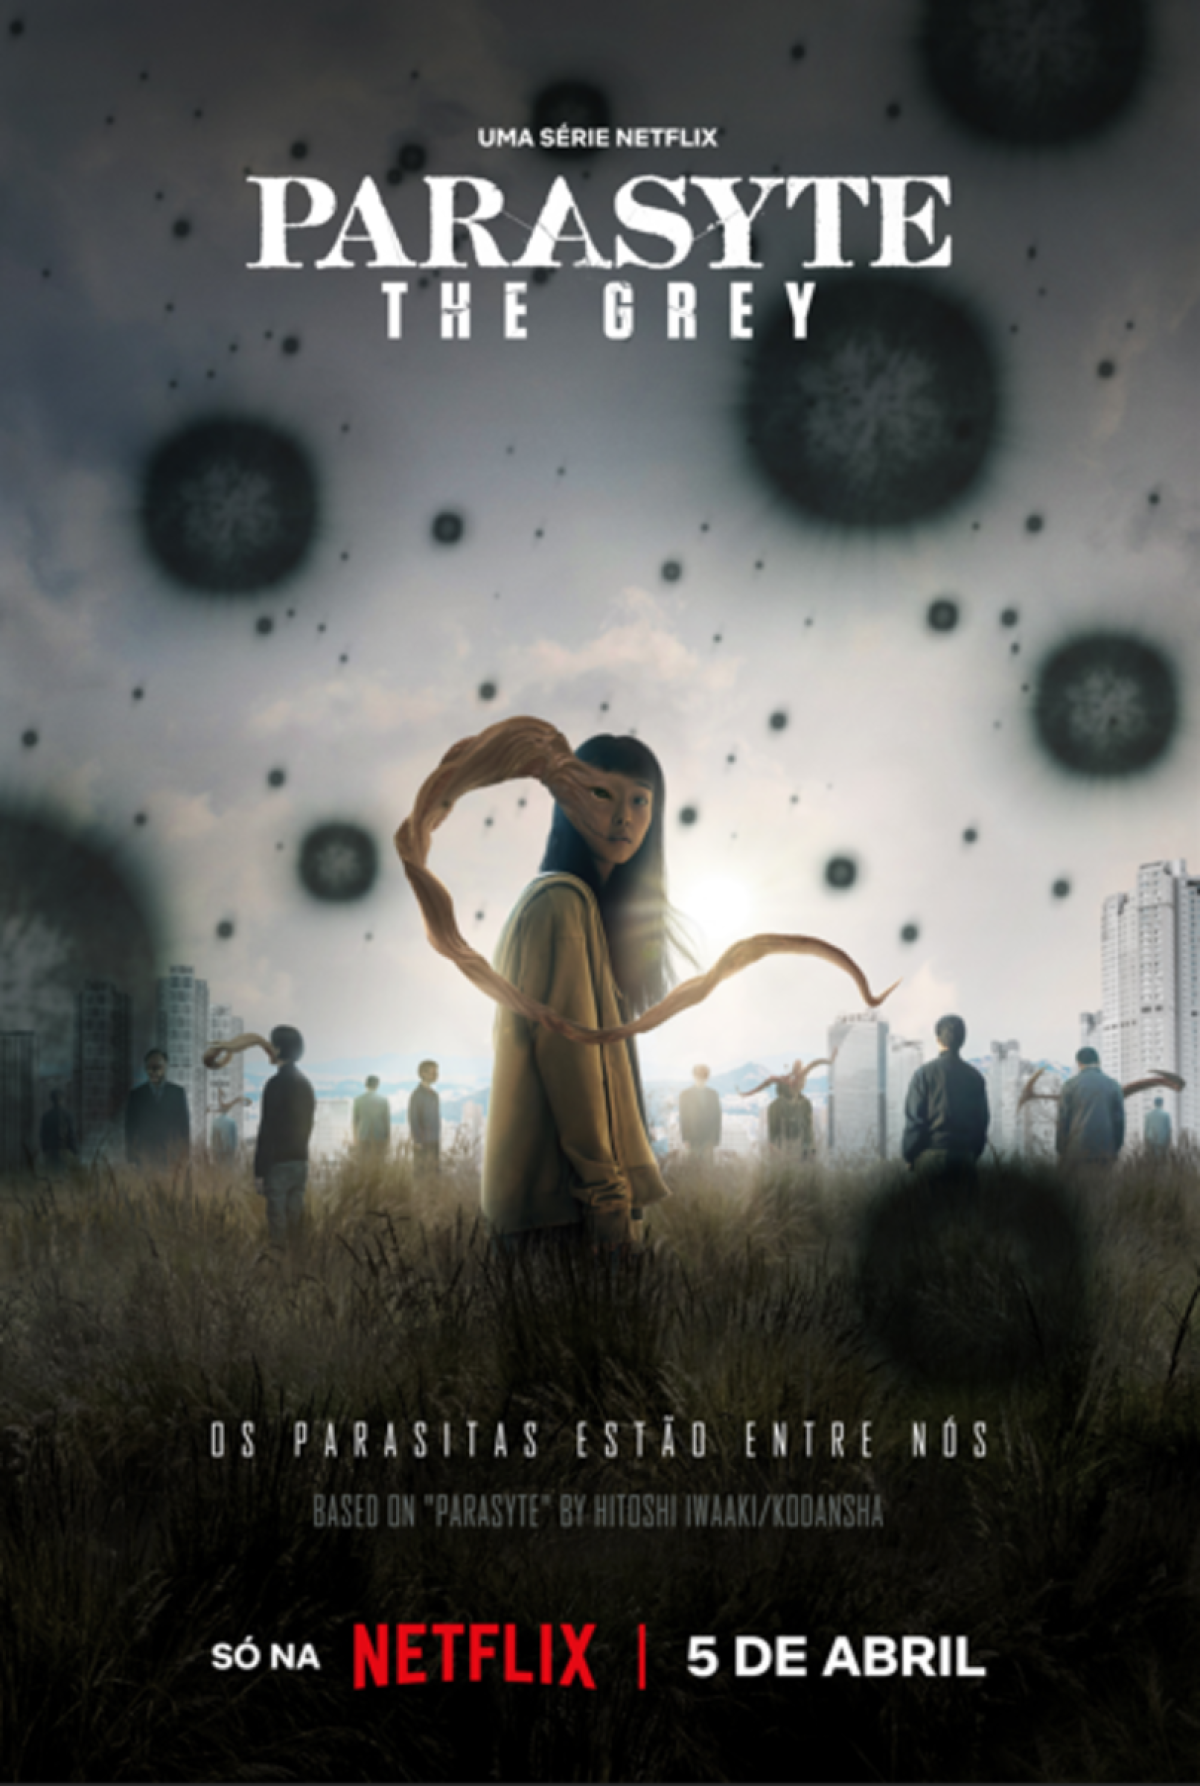 Nova série da Netflix, ‘Parasyte: The Grey’ estreia dia 5 de abril